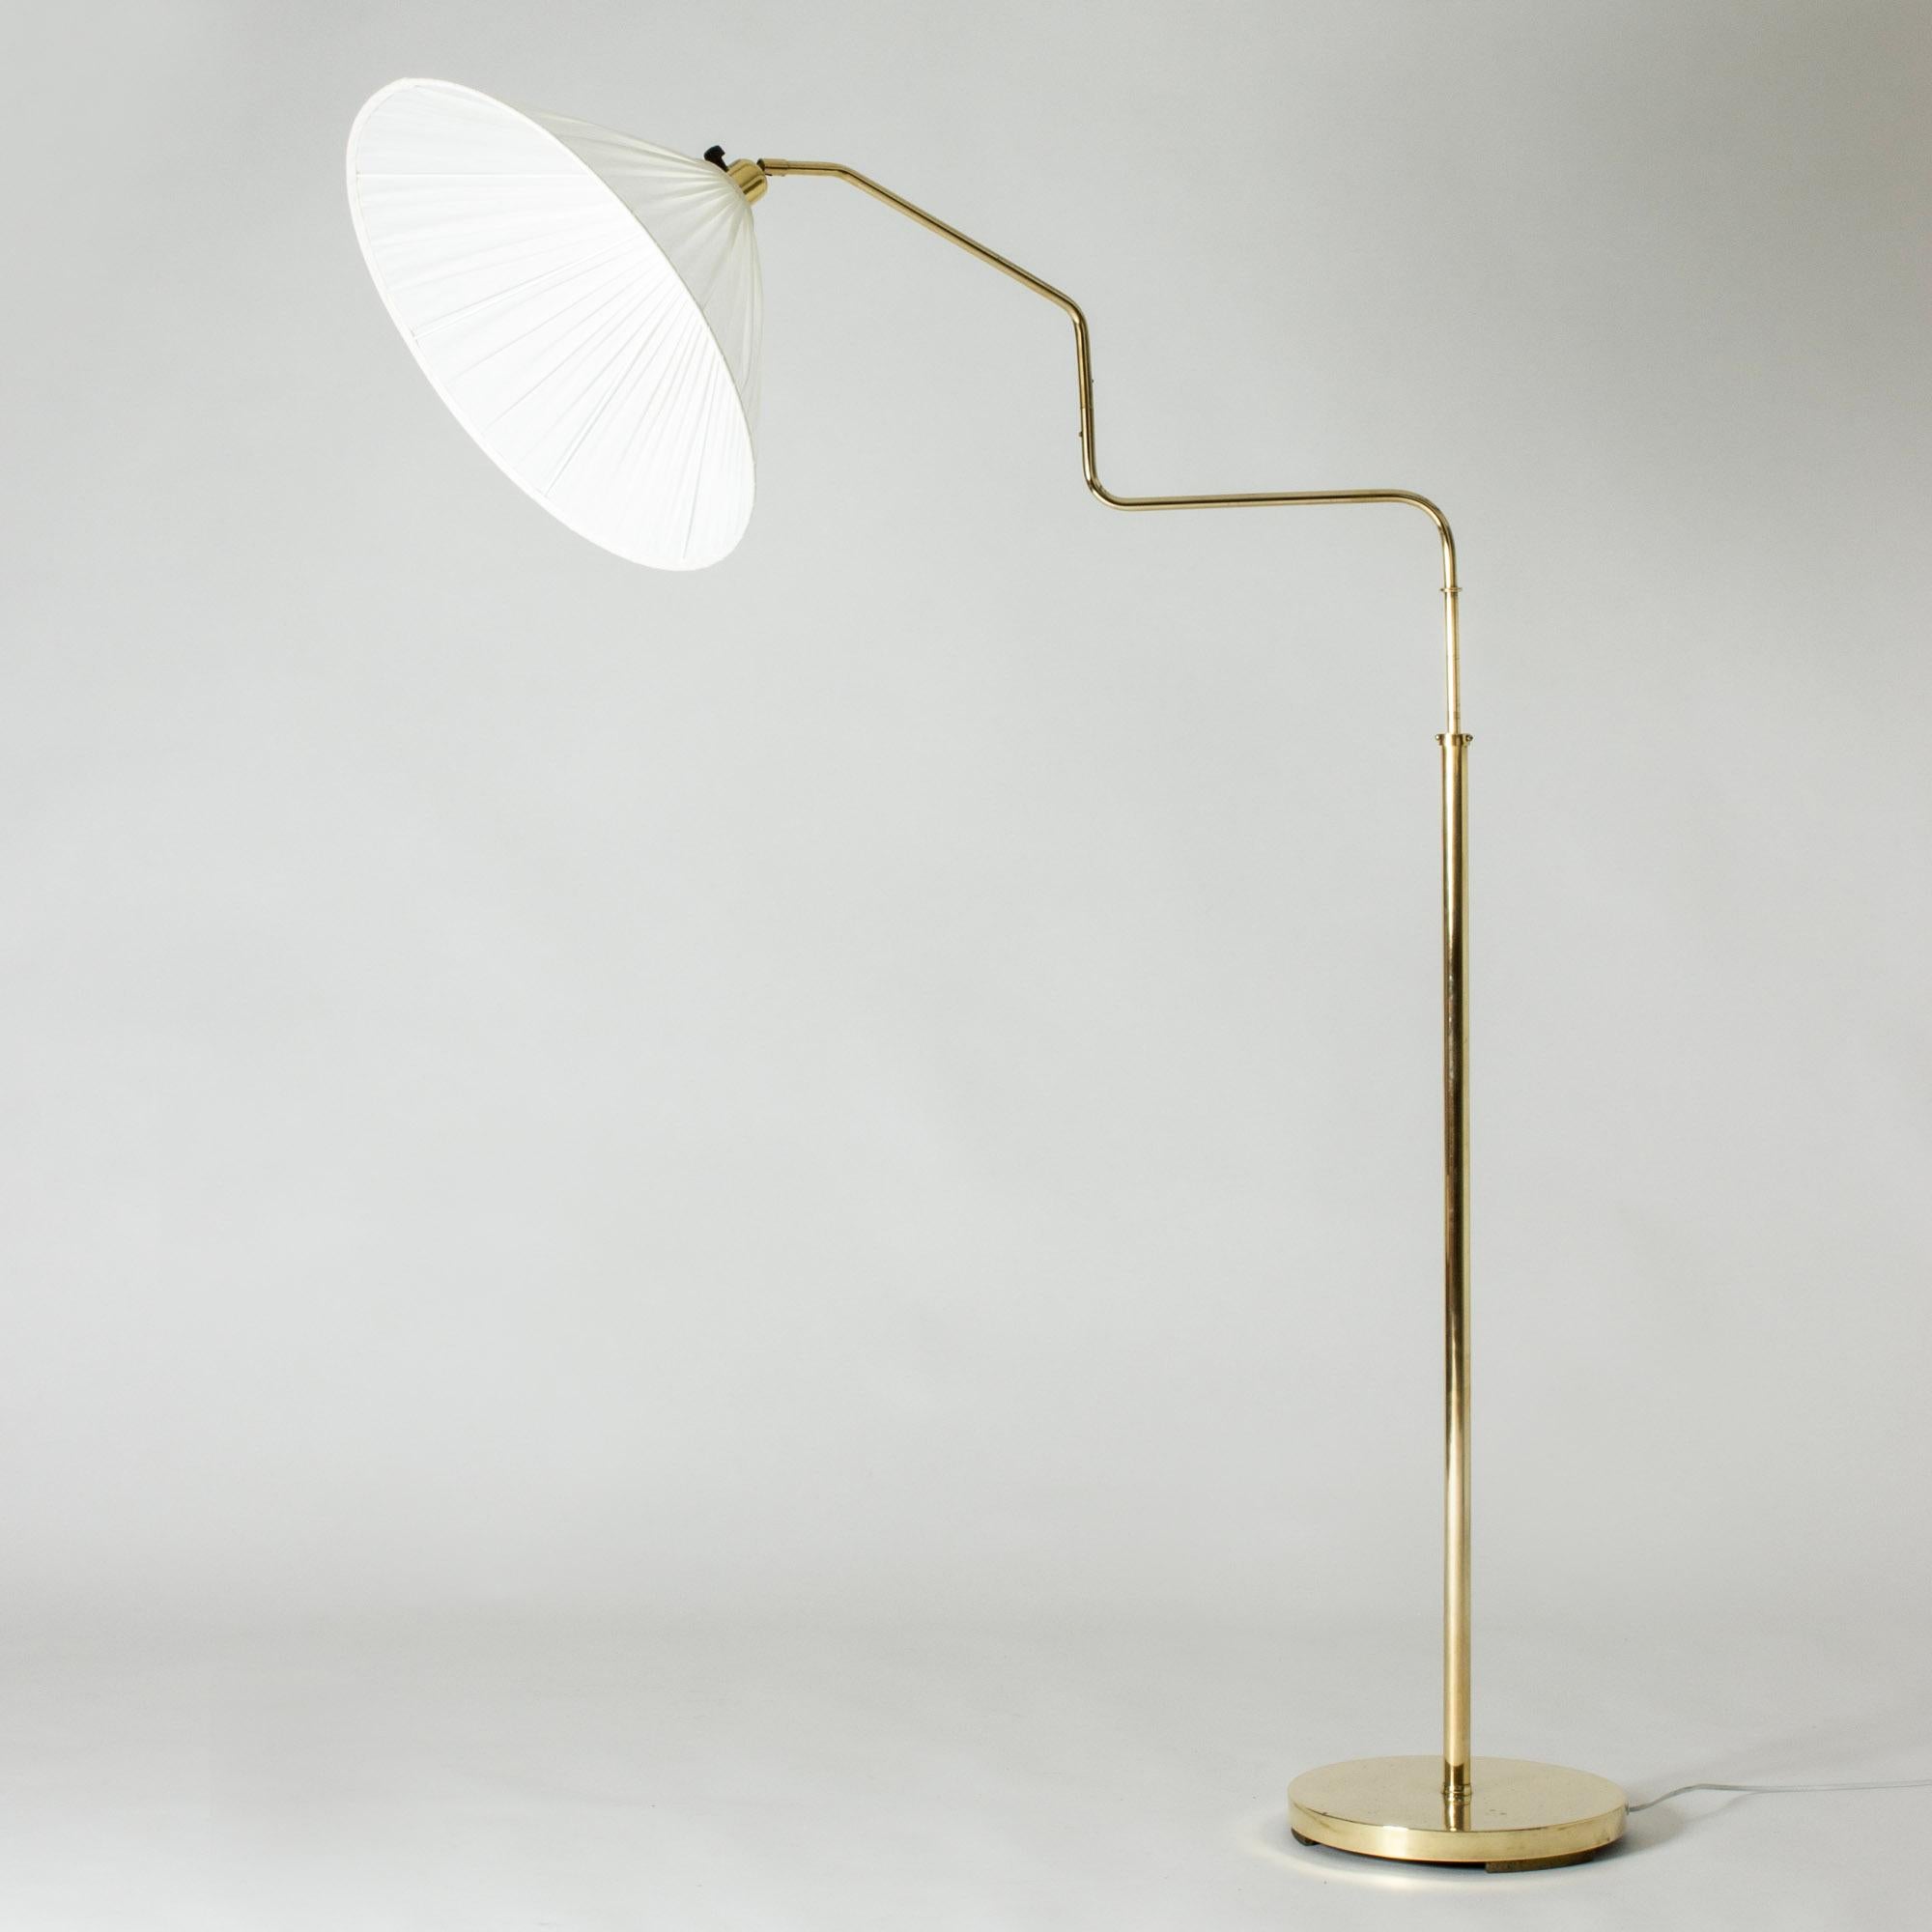 Swedish Scandinavian Midcentury Brass Floor Lamp, Sweden, 1940s